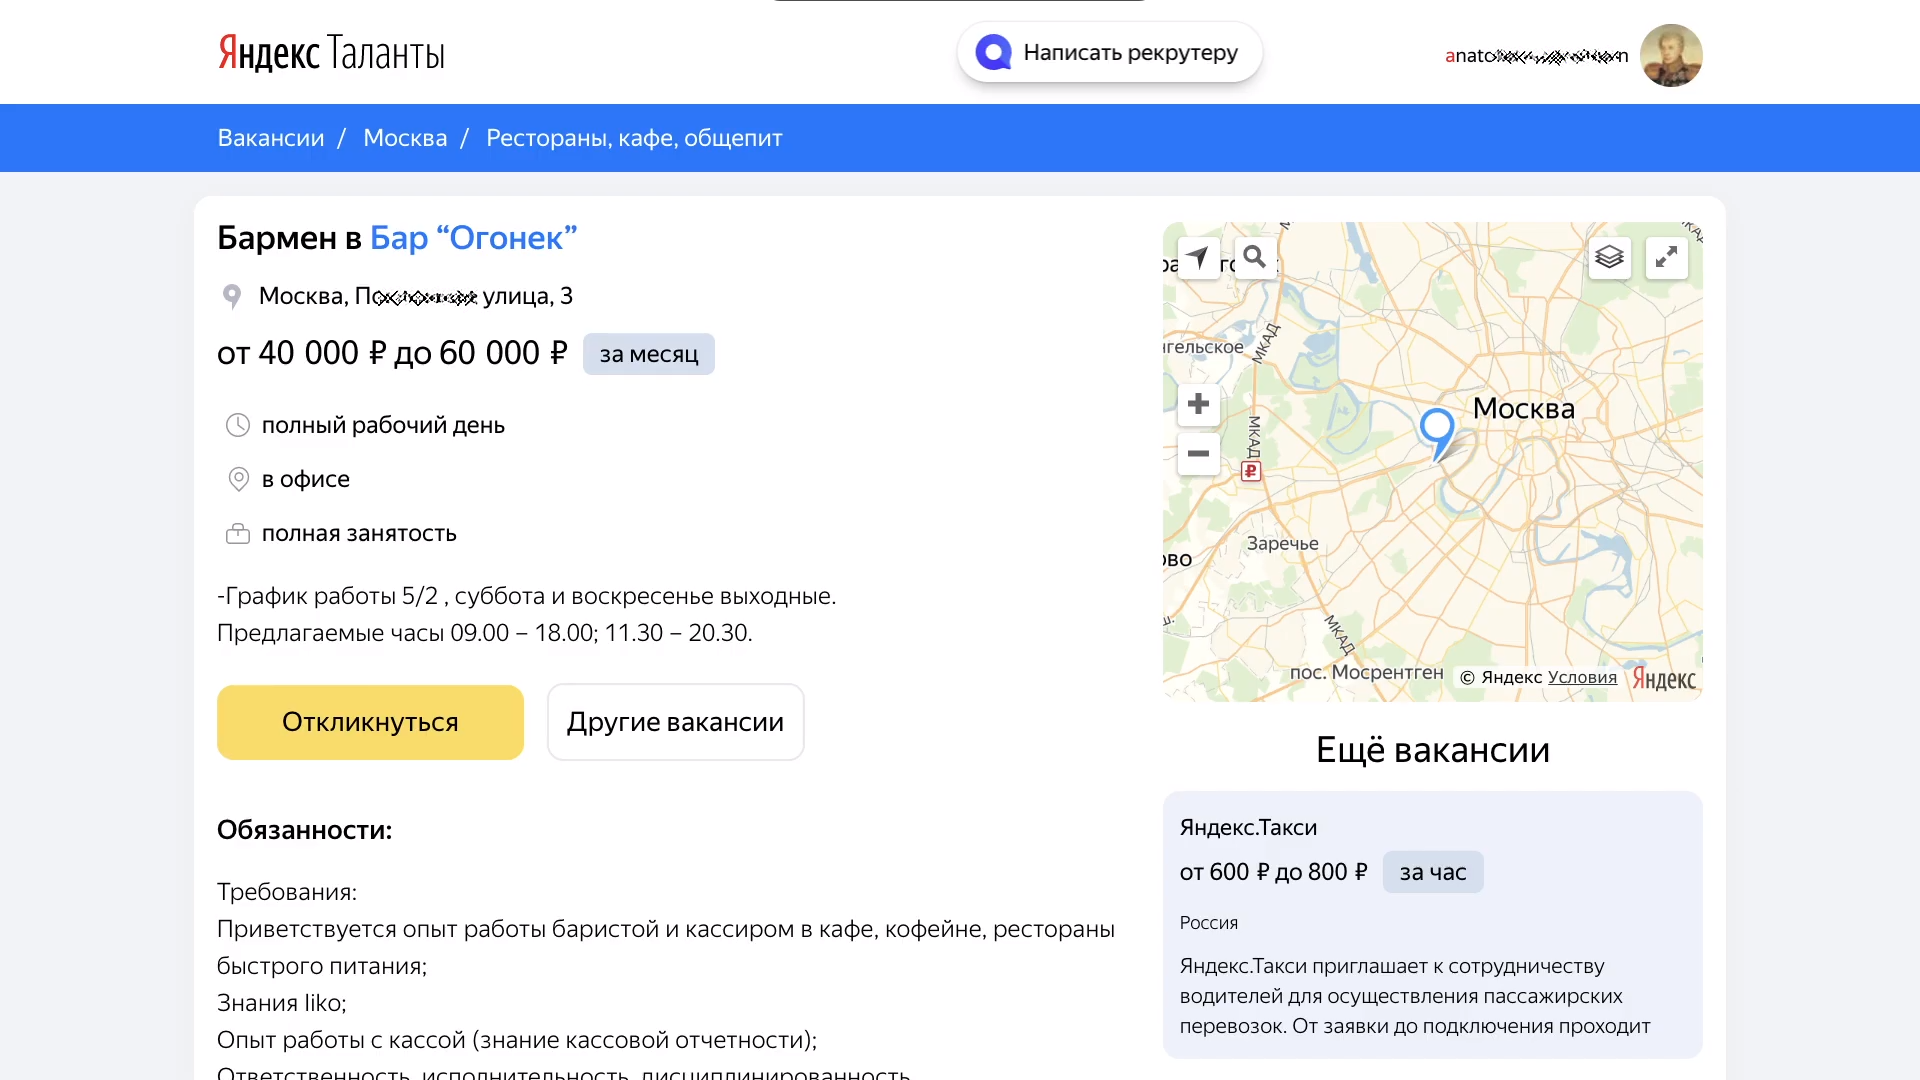 Данные открытой вакансии в интернет-сервисе Яндекс.Таланты